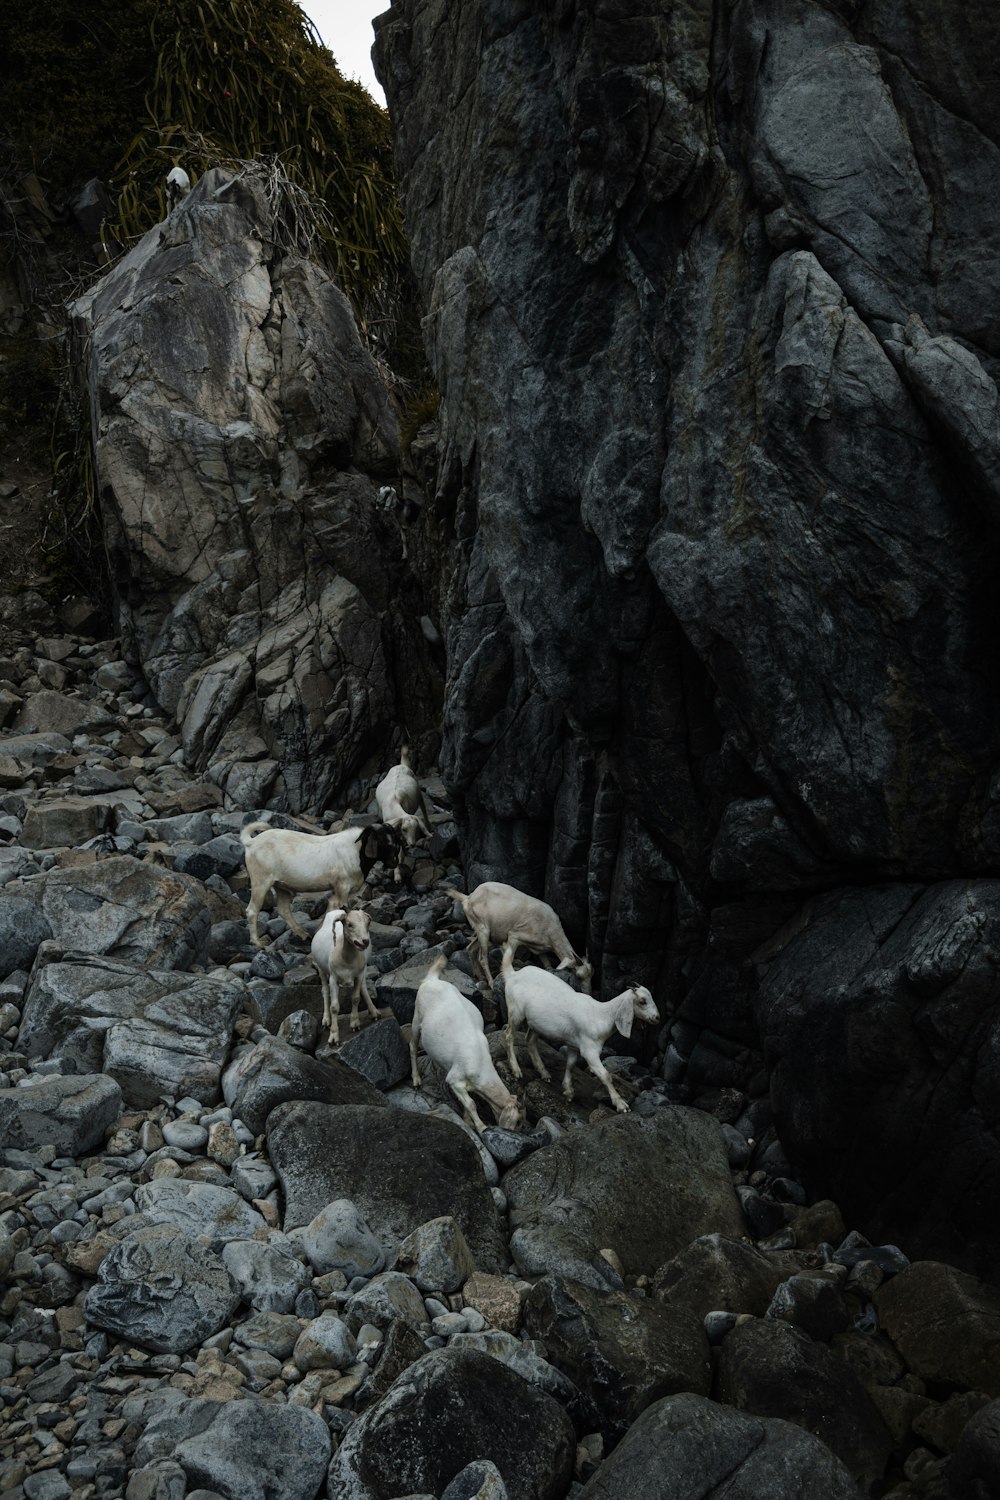 a herd of sheep walking along a rocky beach